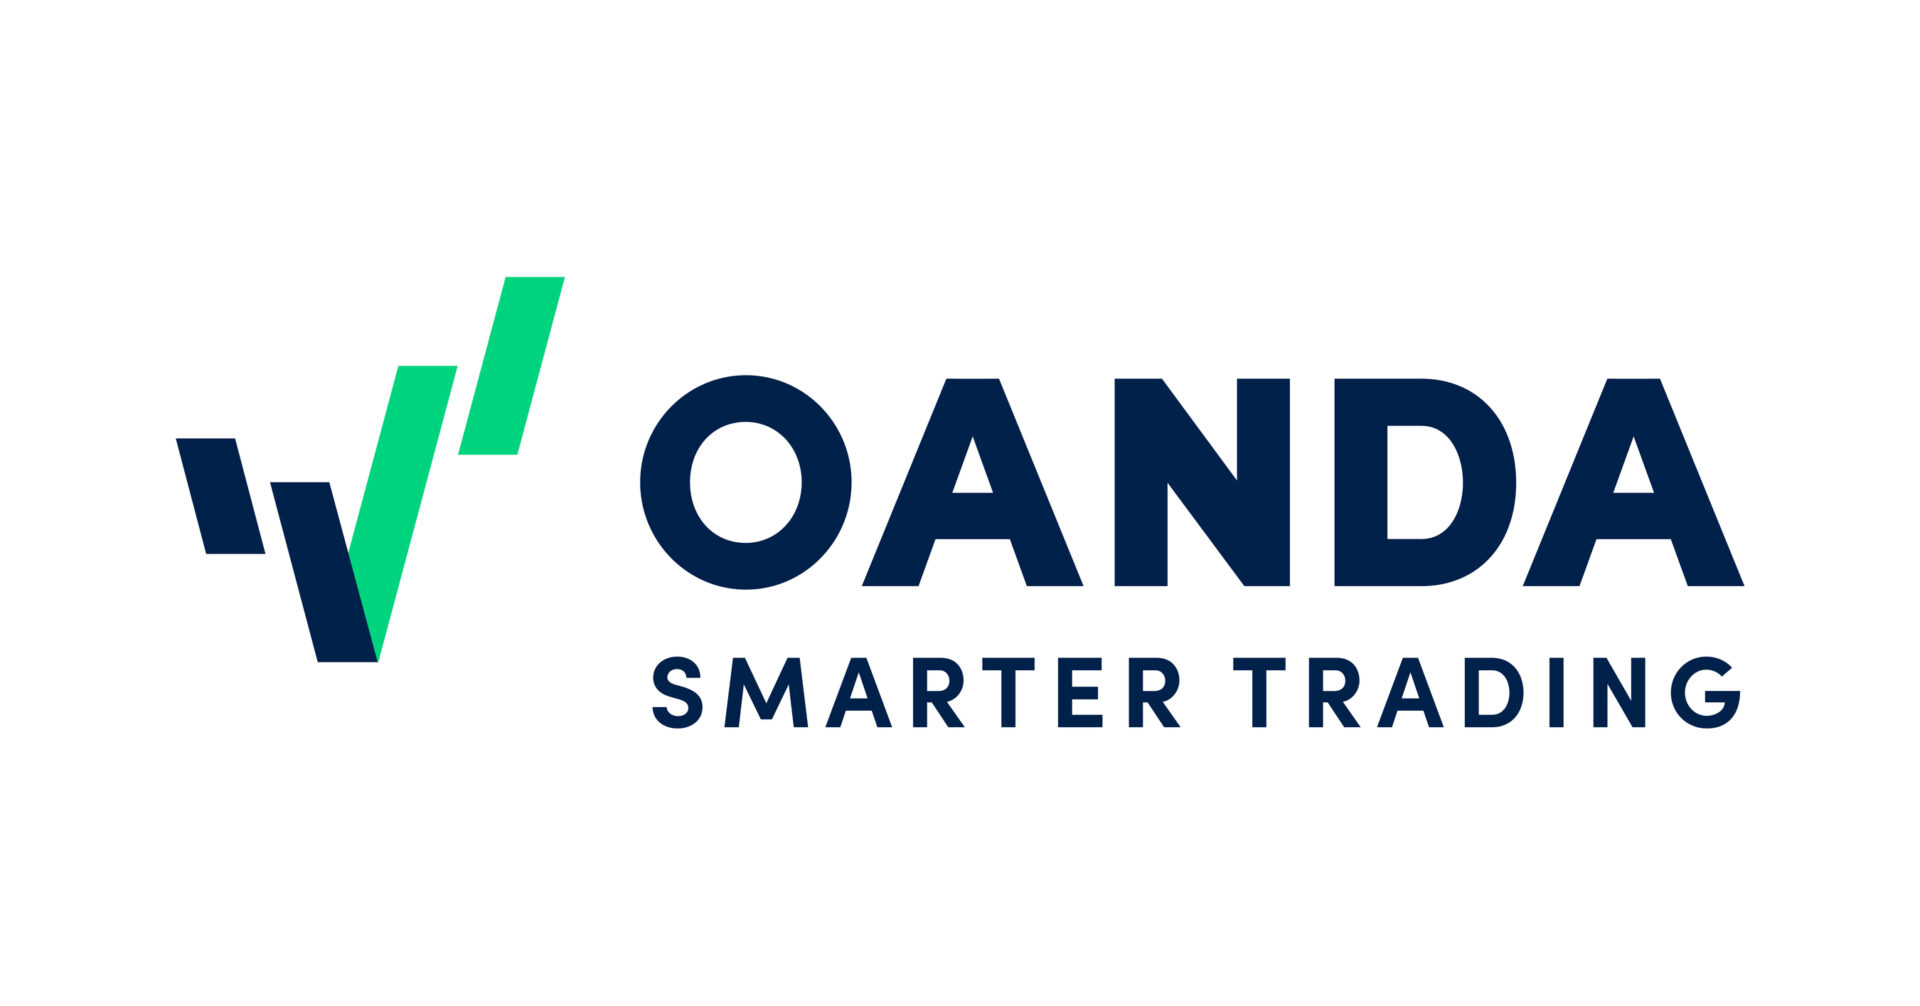 oanda smarter trading
xlearnonline.com